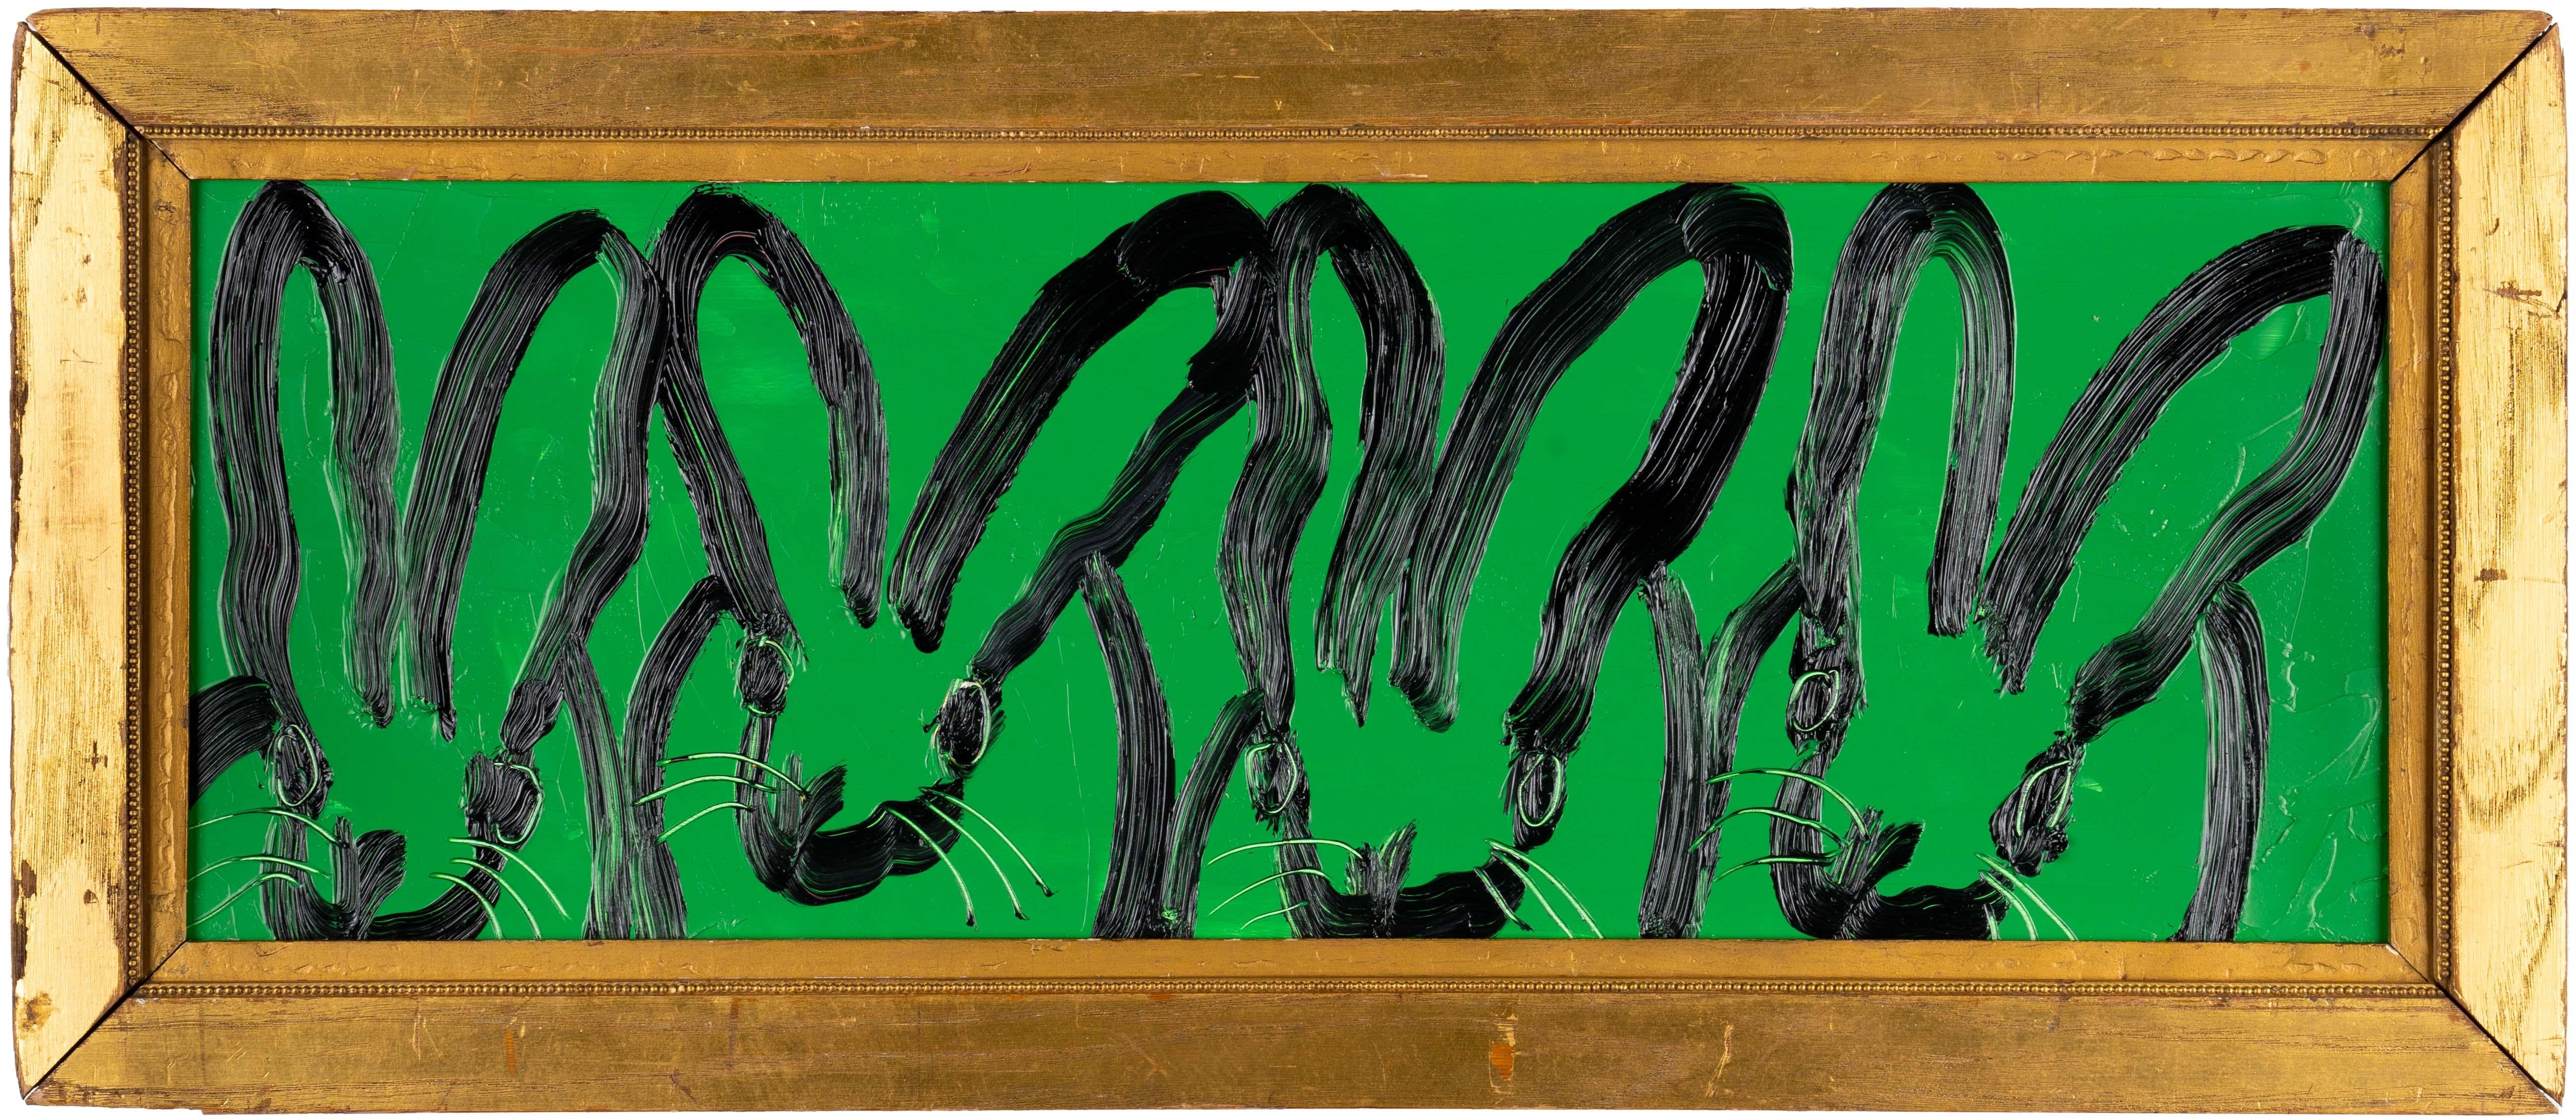 Hunt Slonem "UNTITLED" Hasen auf Grün
Vier schwarze Hasen mit Gesten auf dunkelgrünem Hintergrund, gerahmt in einem antiken goldenen Holzrahmen.

Ungerahmt: 9 x 25,5 Zoll
Gerahmt: 12,5 x 29 Zoll
*Gemälde ist gerahmt - Bitte beachten Sie Hunt Slonem